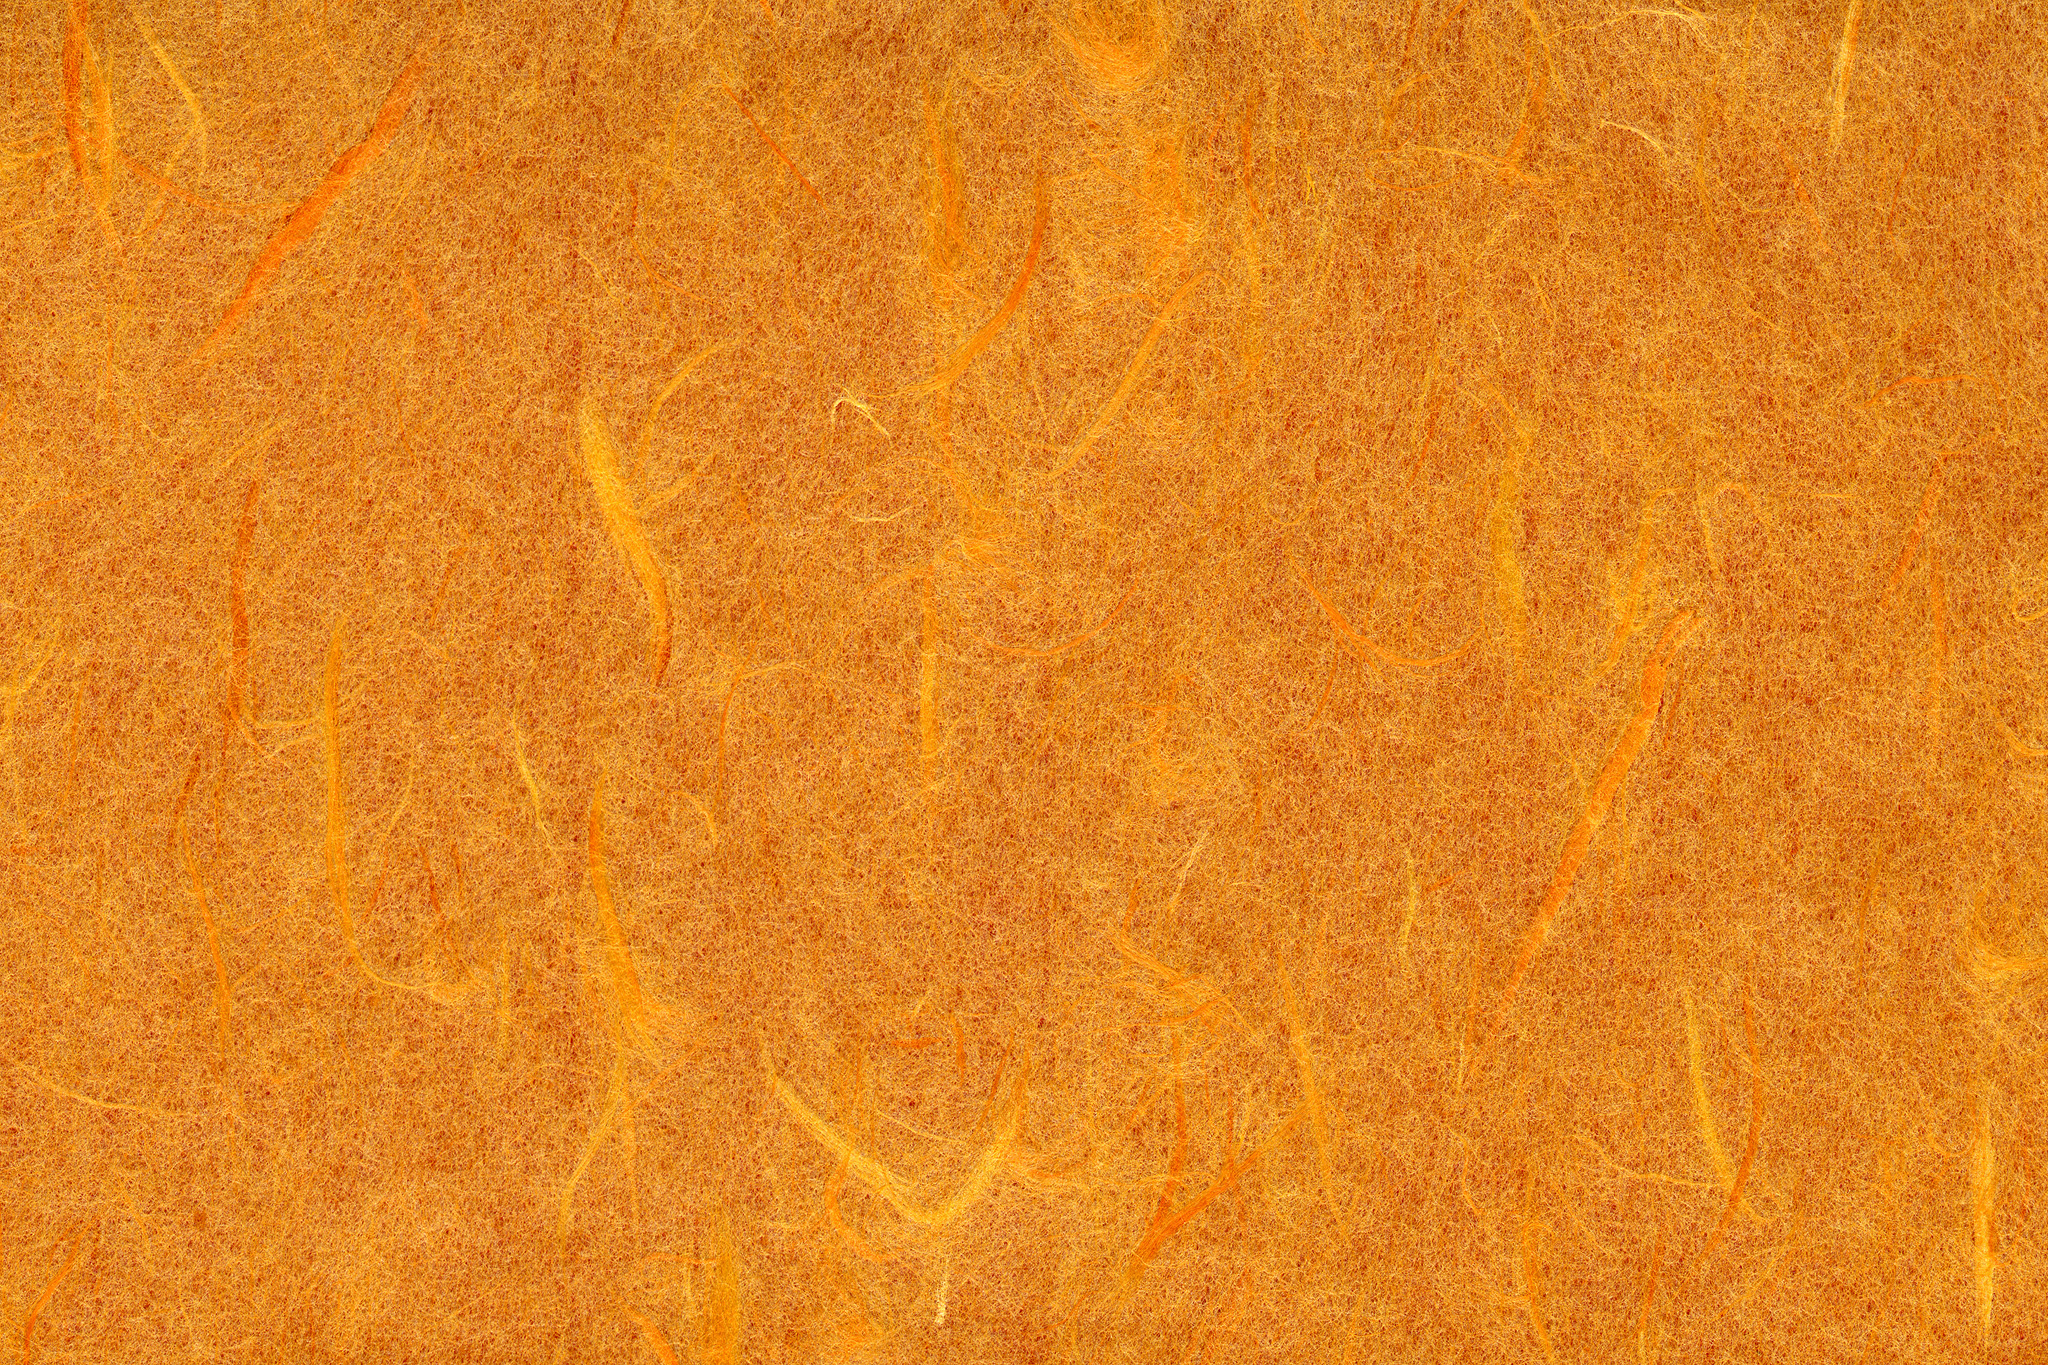 夕焼けの様なオレンジ色の雲竜和紙 のテクスチャ素材を無料ダウンロード 1 フリー素材 Beiz Images